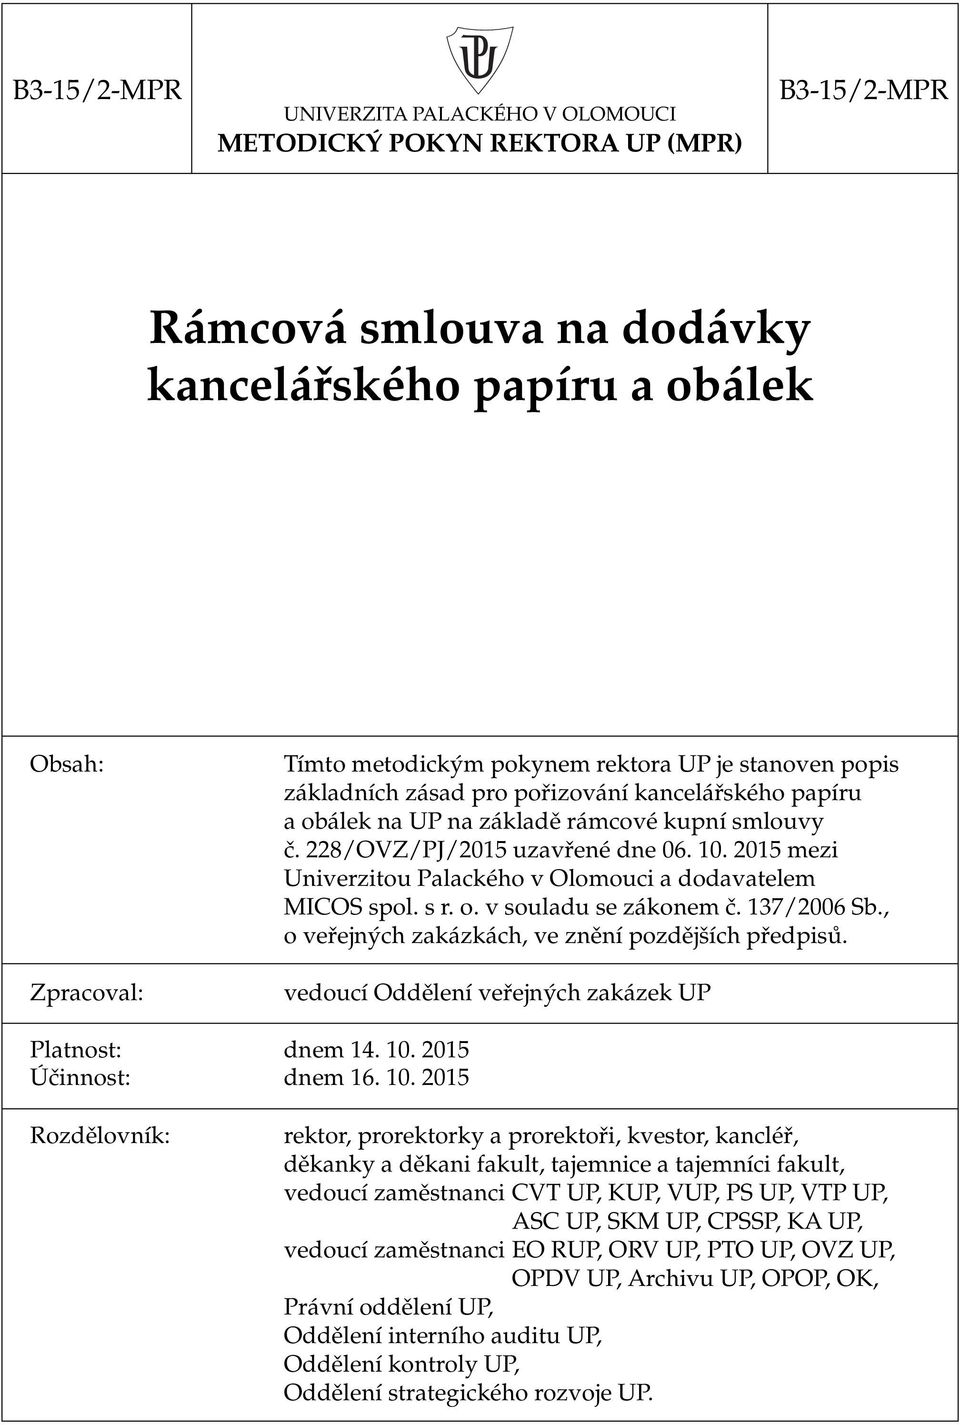 2015 mezi Univerzitou Palackého v Olomouci a dodavatelem MICOS spol. s r. o. v souladu se zákonem č. 137/2006 Sb., o veřejných zakázkách, ve znění pozdějších předpisů.